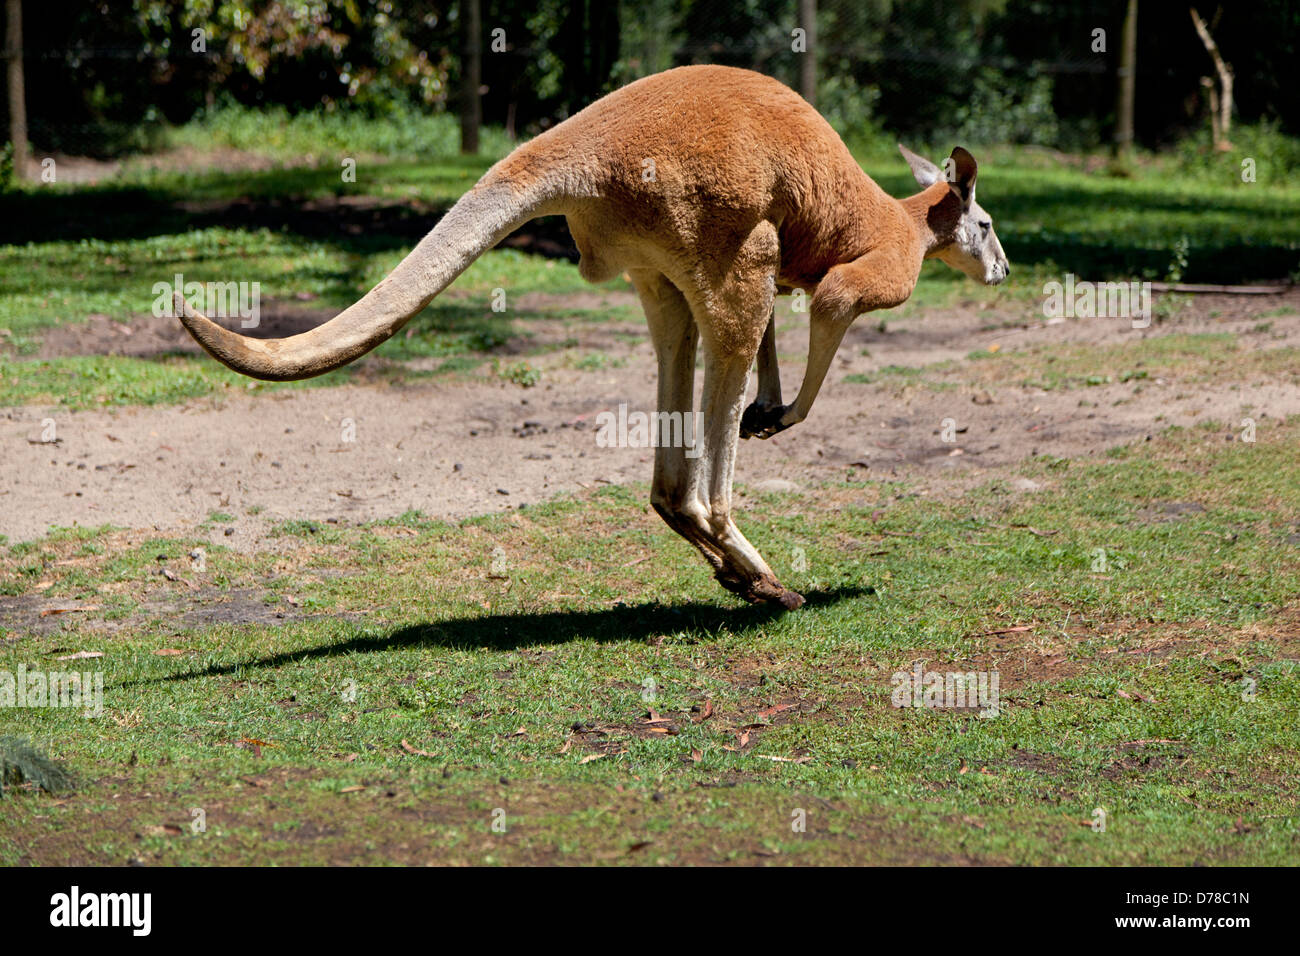 Red kangaroo hopping around in Australia Stock Photo